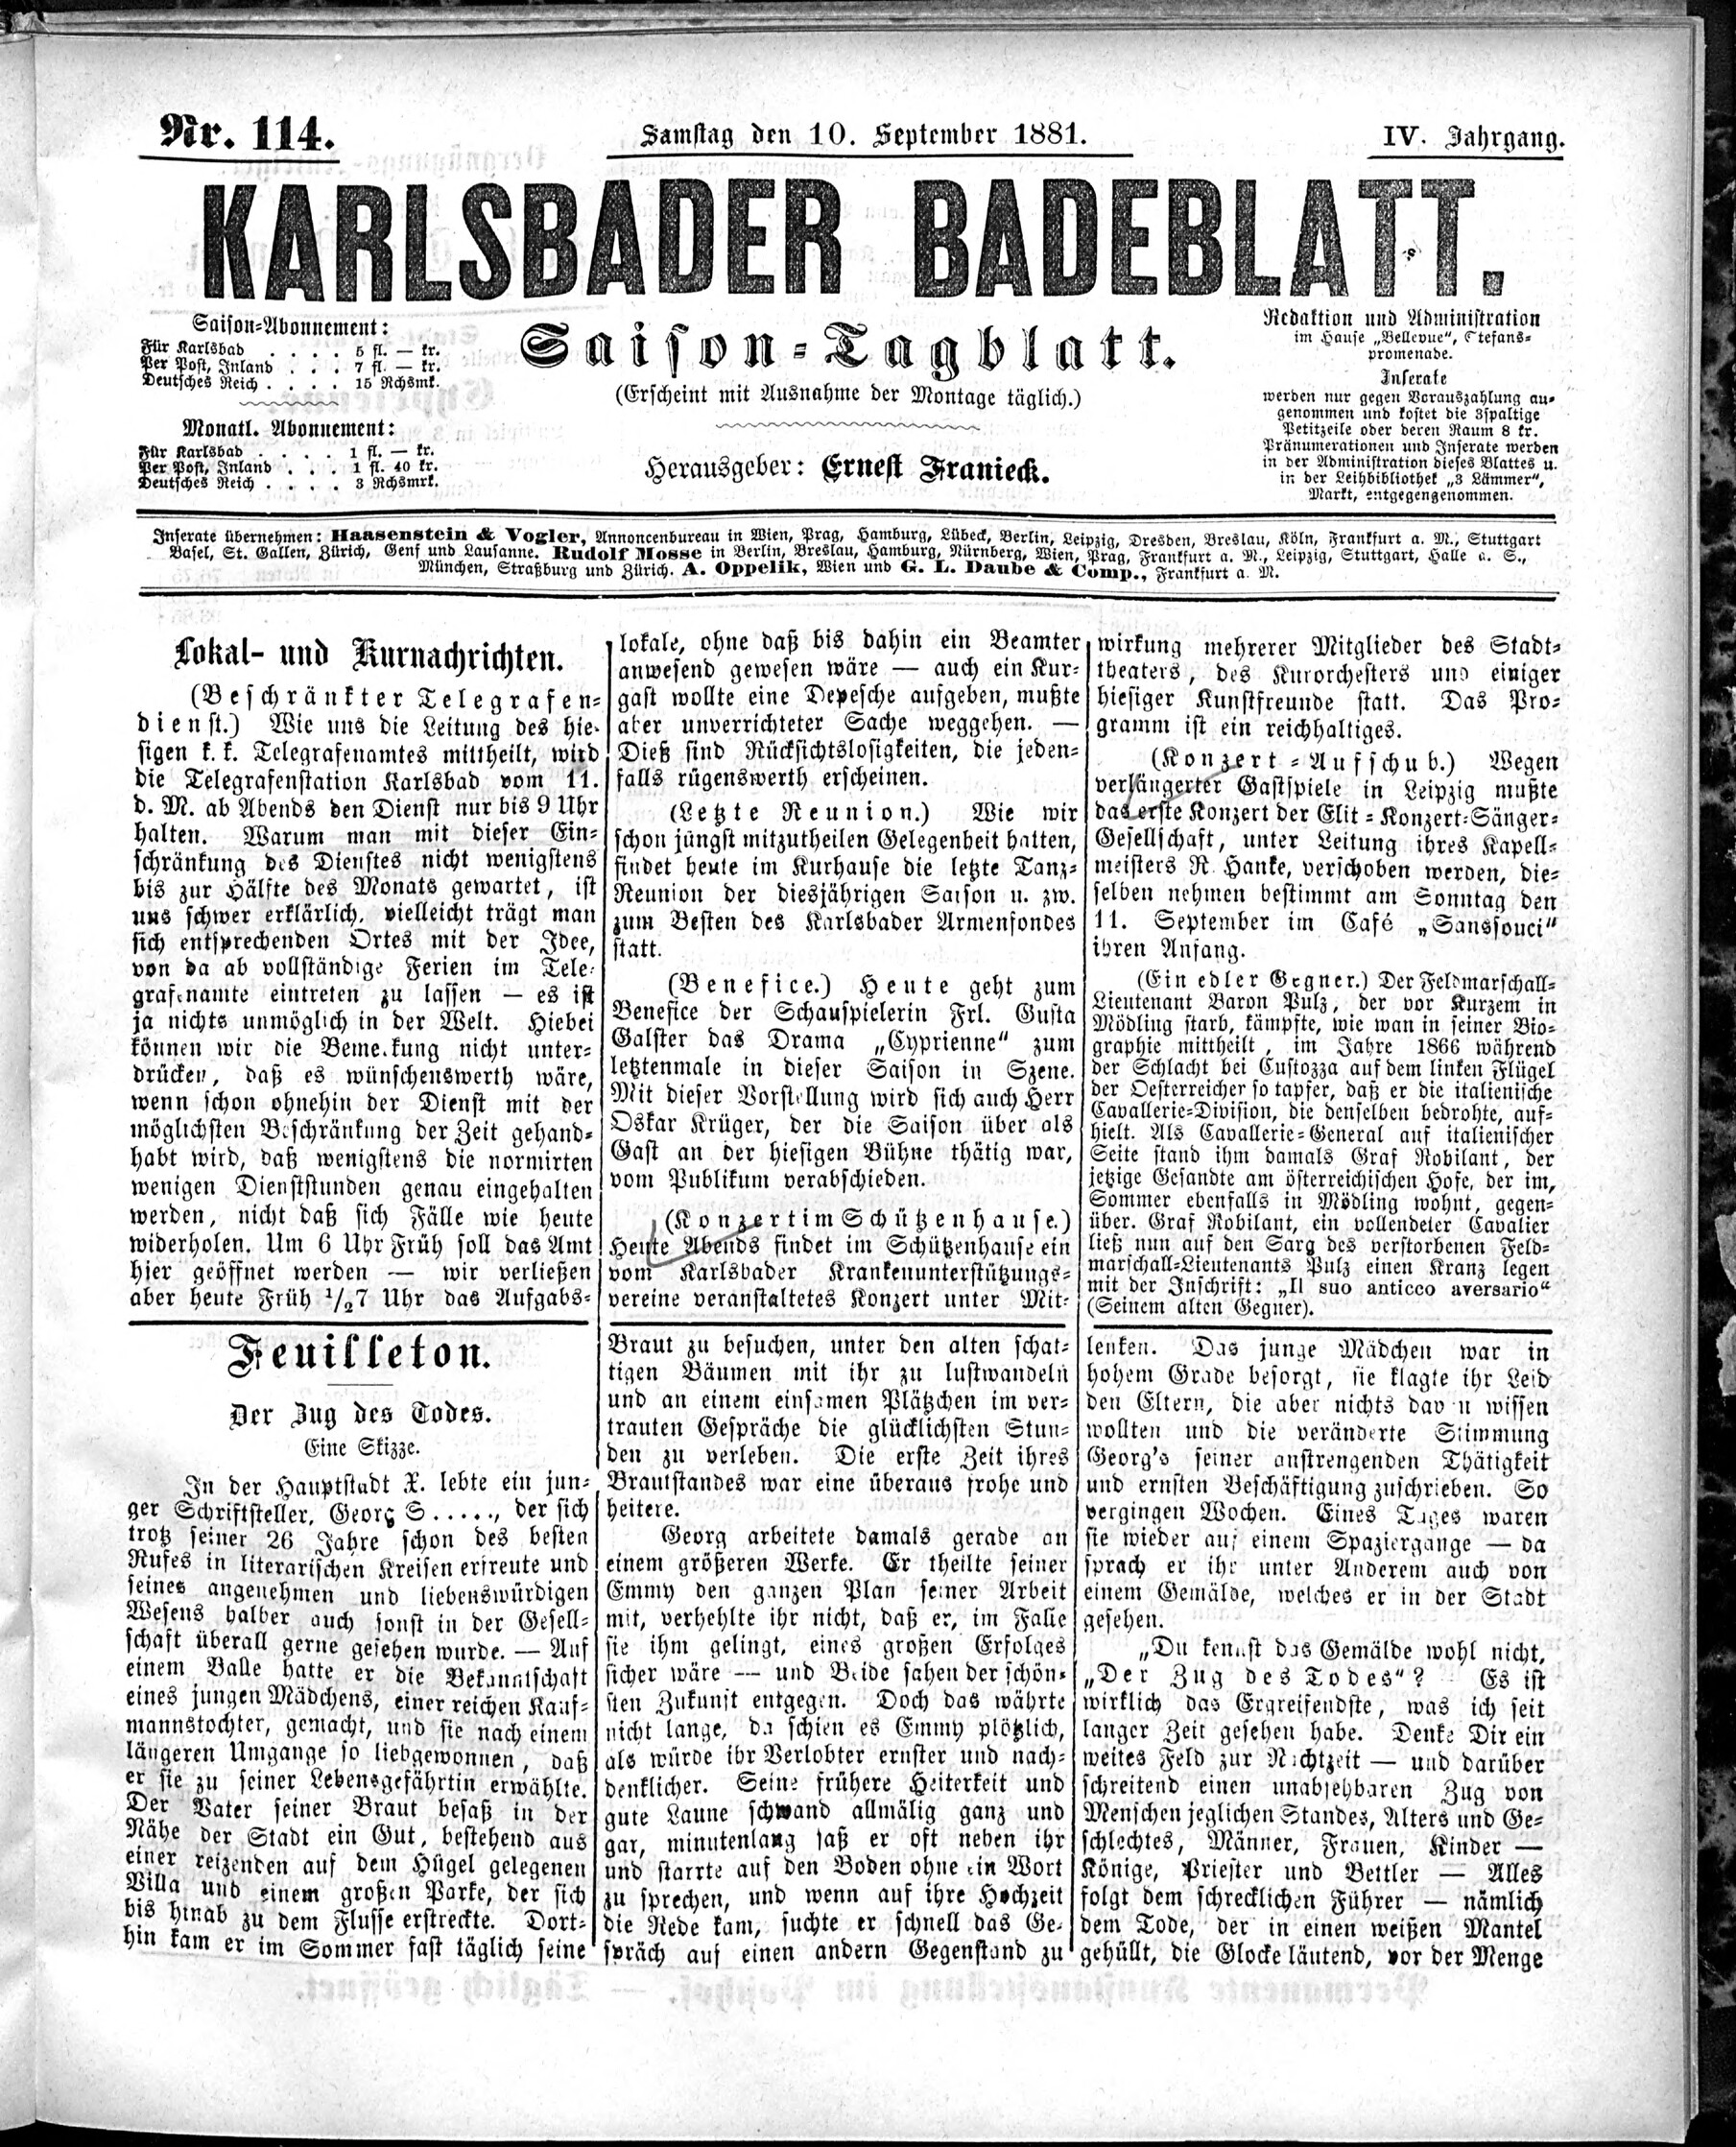 1. karlsbader-badeblatt-1881-09-10-n114_2325